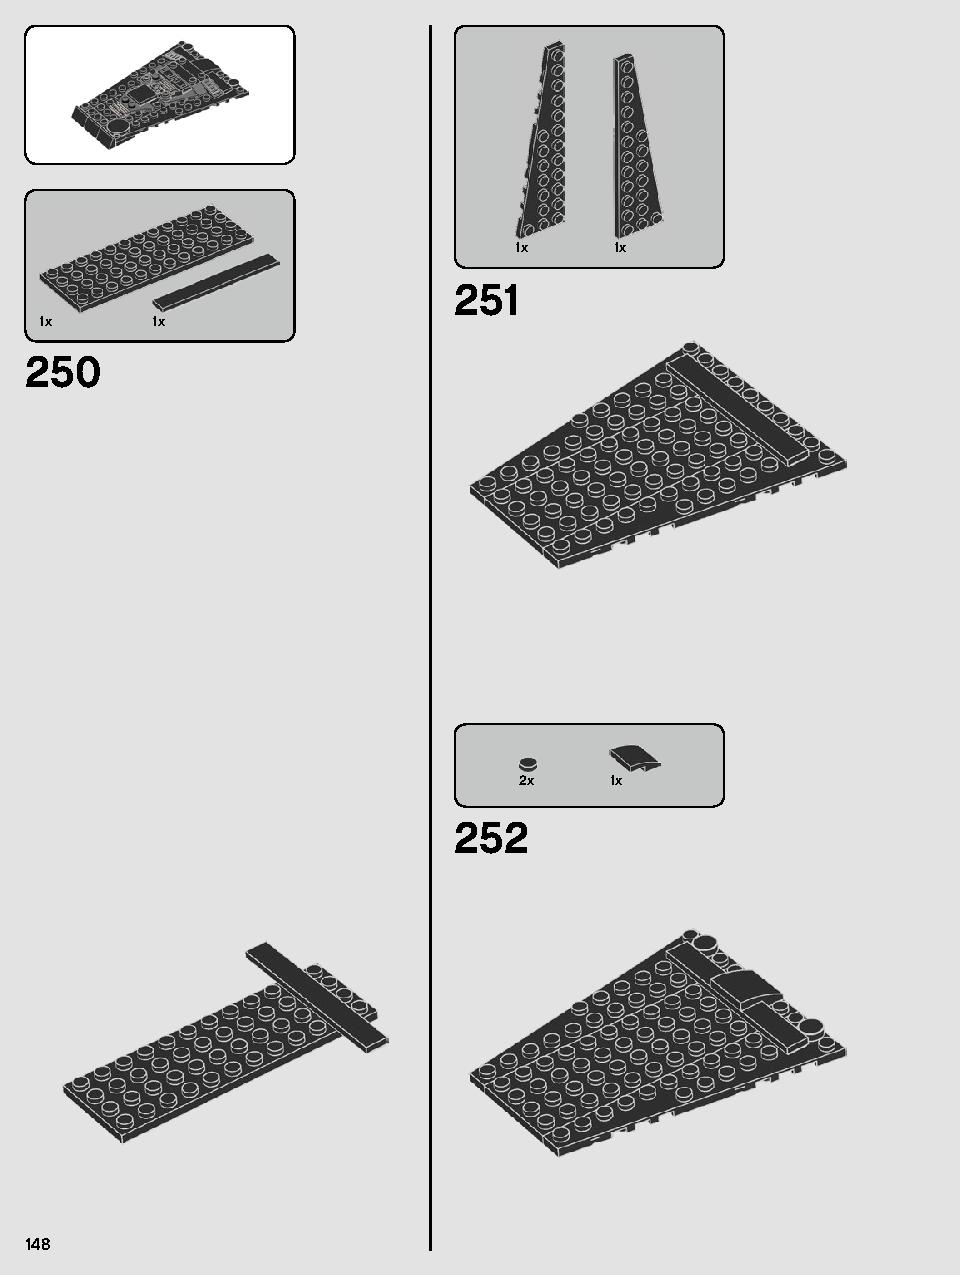 스타워즈 카일로 렌의 셔틀™ 75256 레고 세트 제품정보 레고 조립설명서 148 page